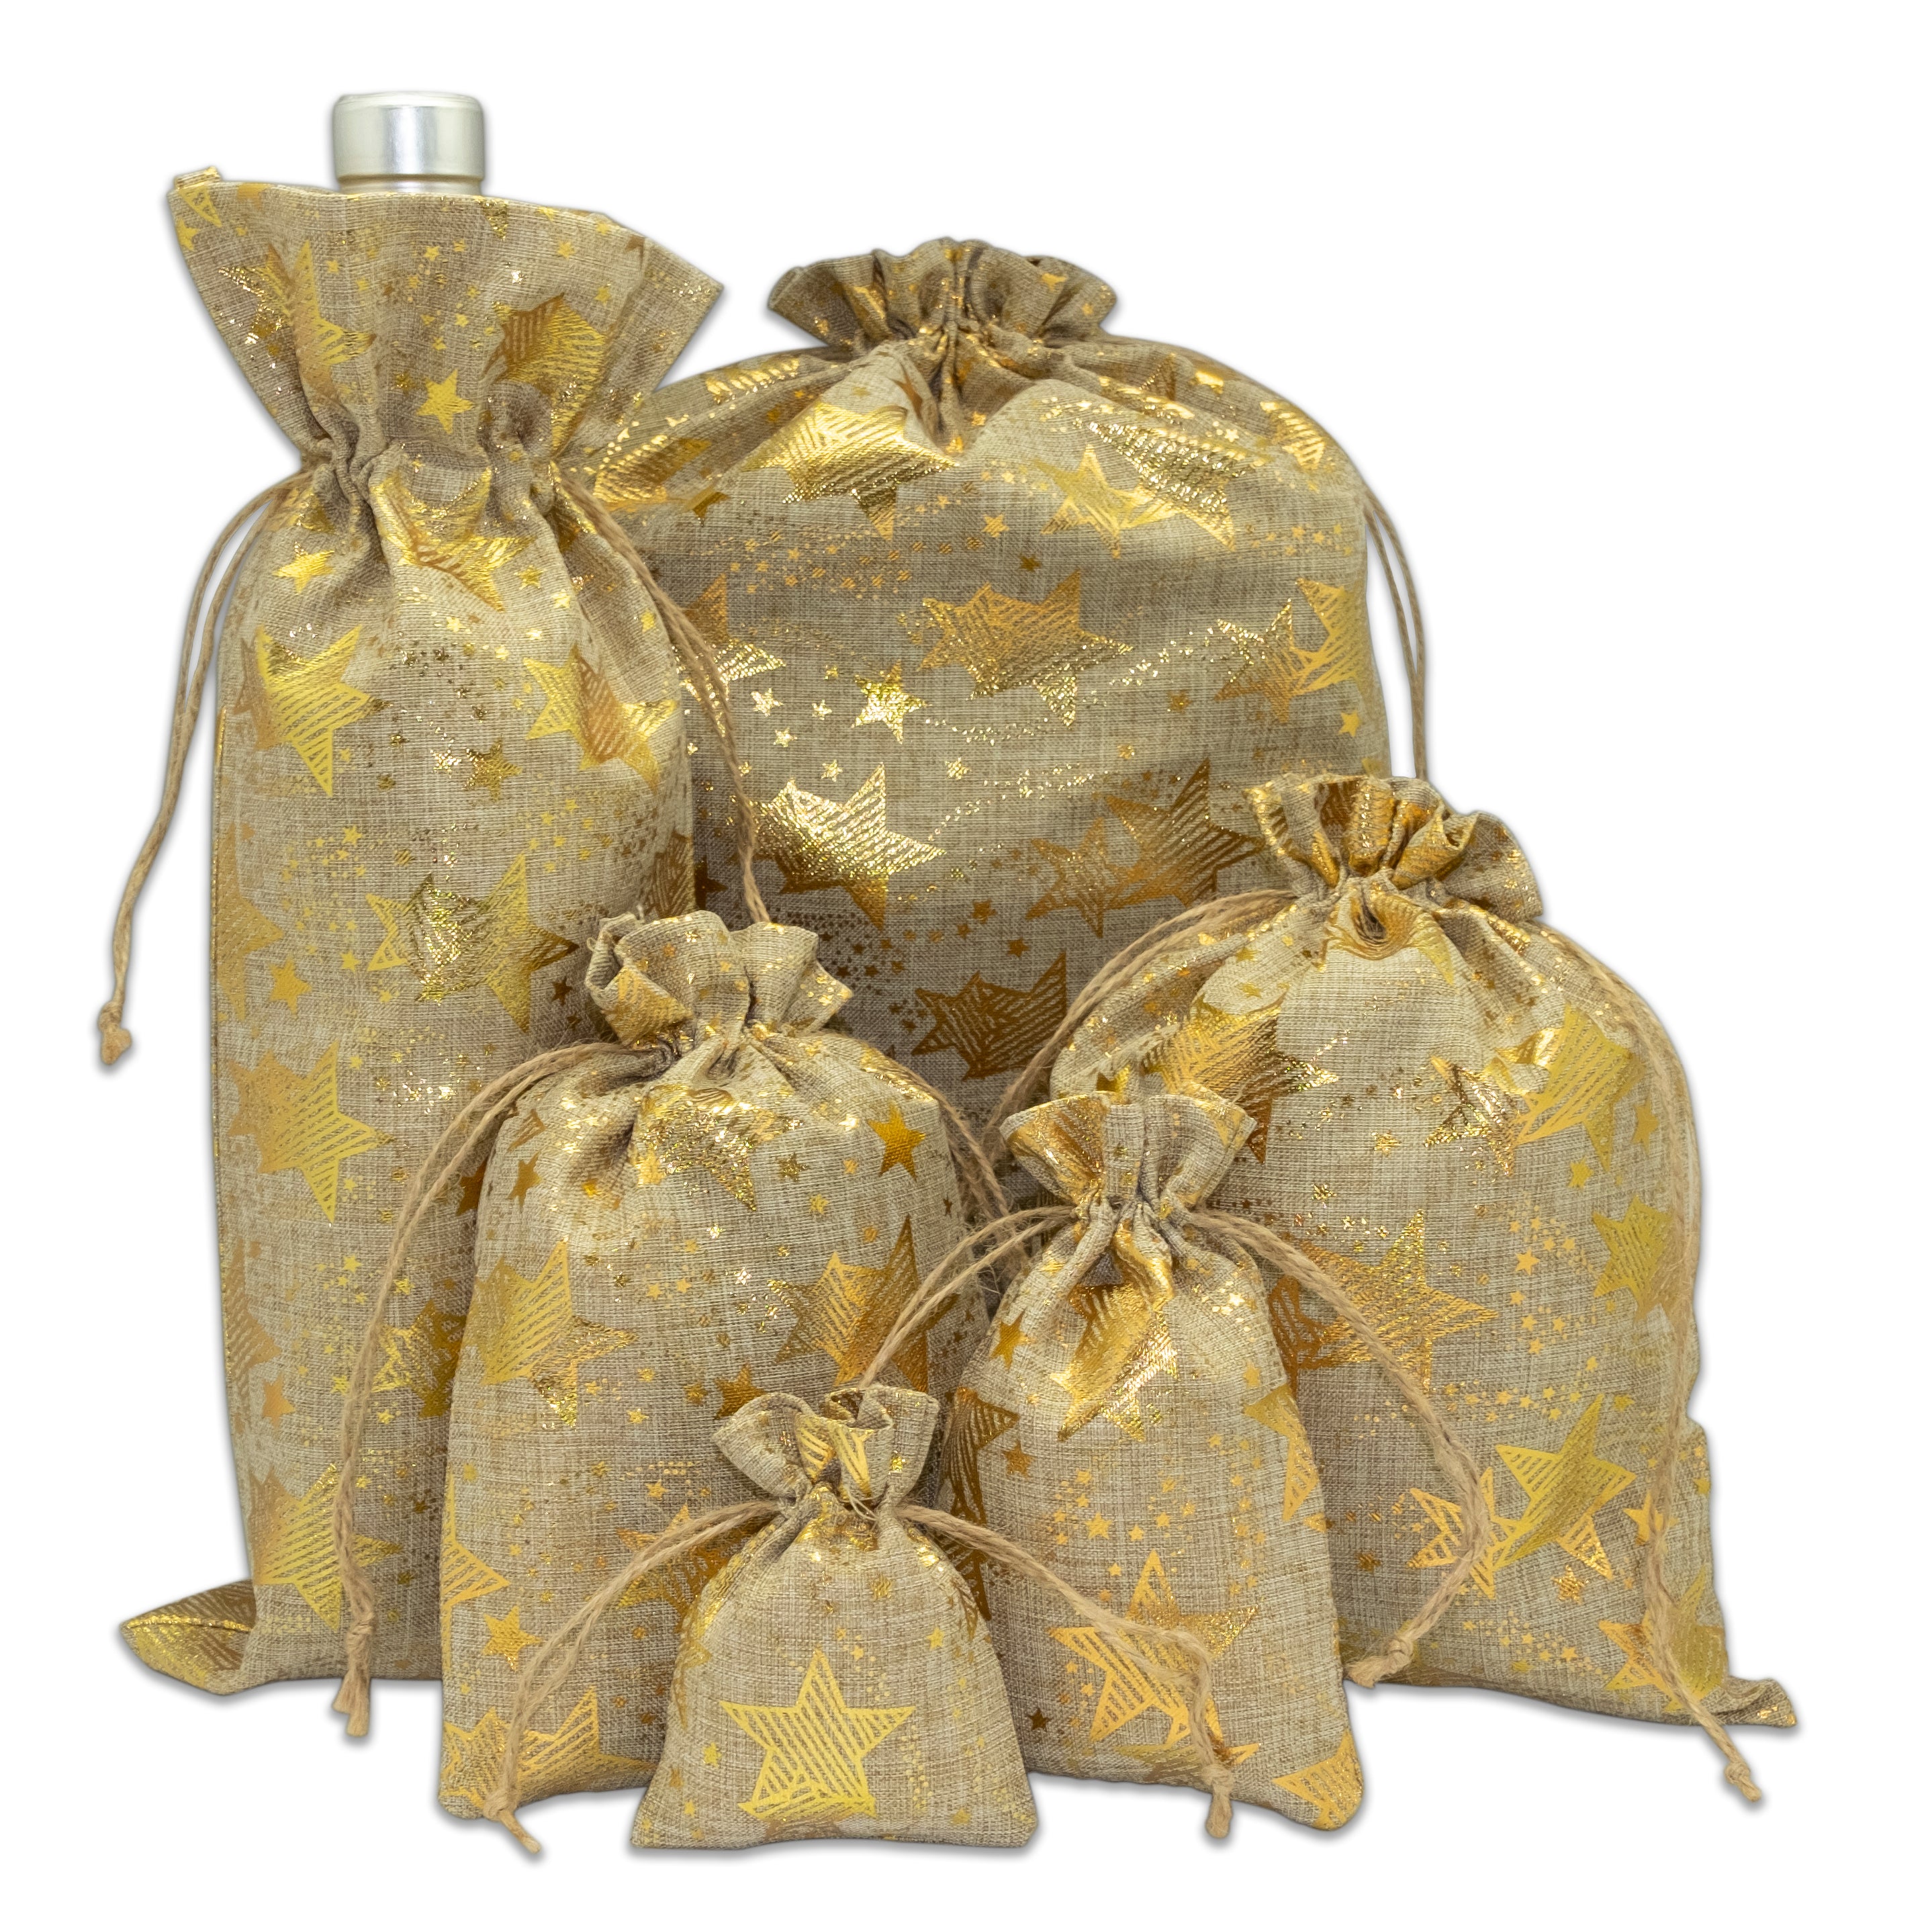 Gold Star Fabric Gift Bag, Christmas